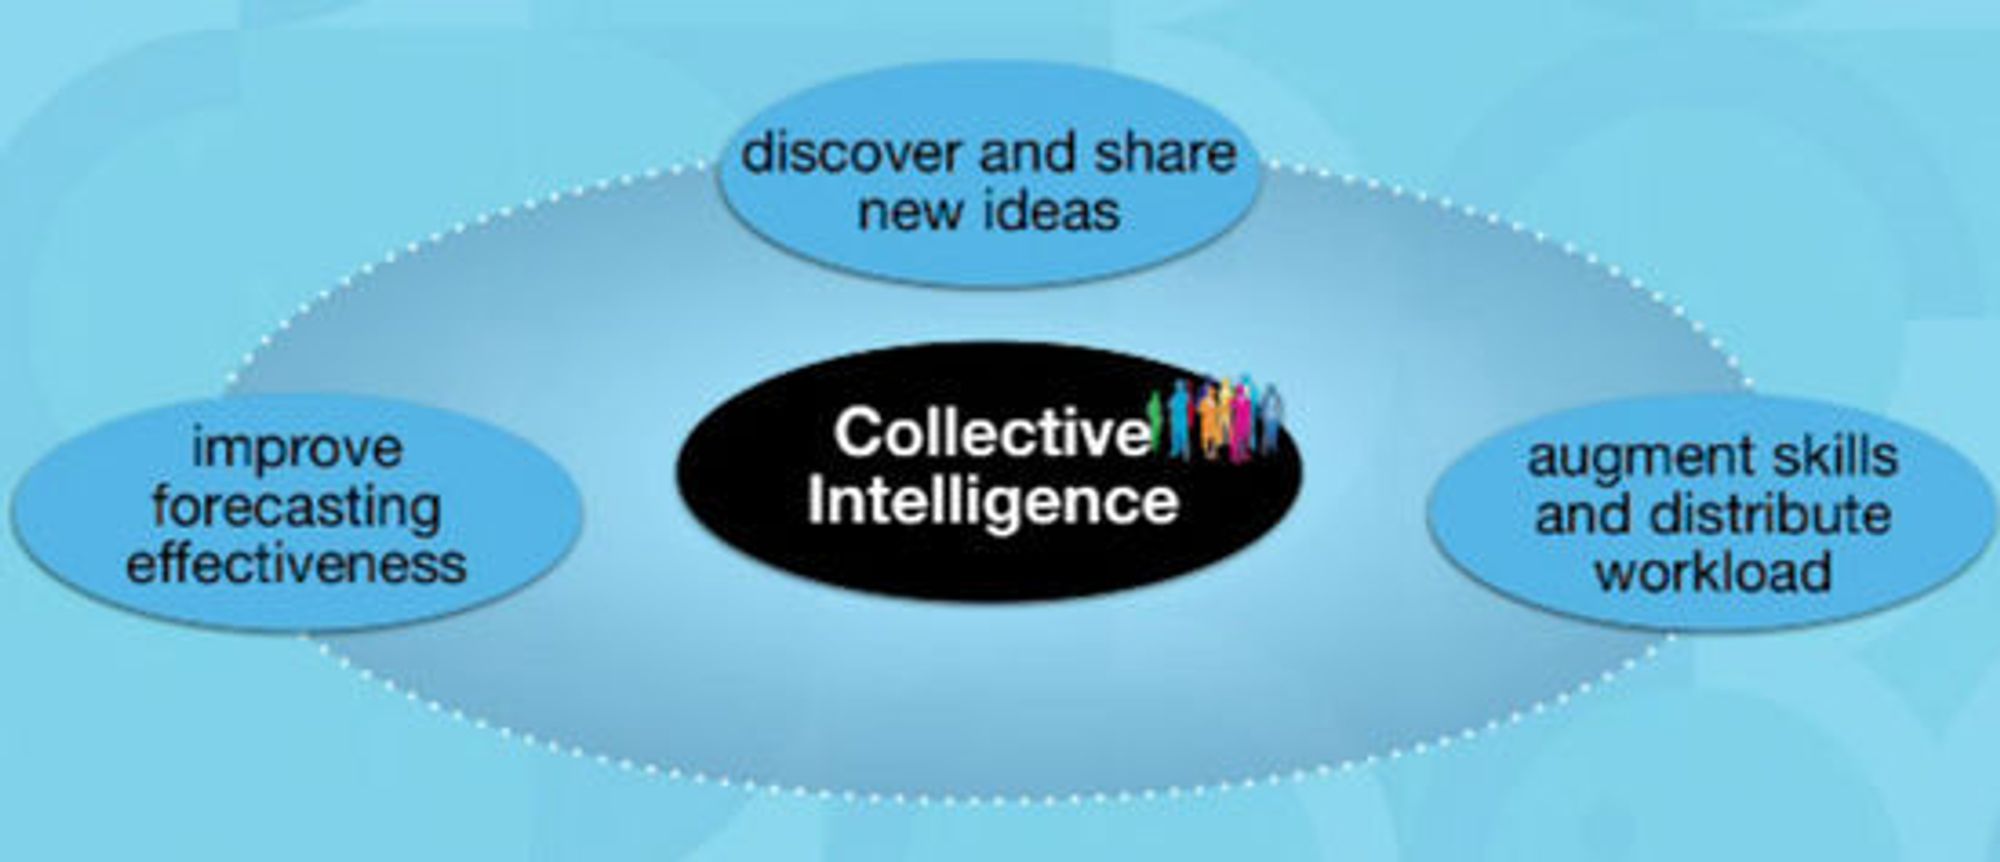 De tre hovedbestanddelene i kollektiv intelligens, ifølge IBM: Bli flinkere til å spå, oppdage og dele nye ideer, samt øke felleskompetansen og evnen til å fordele arbeid til hverandre.